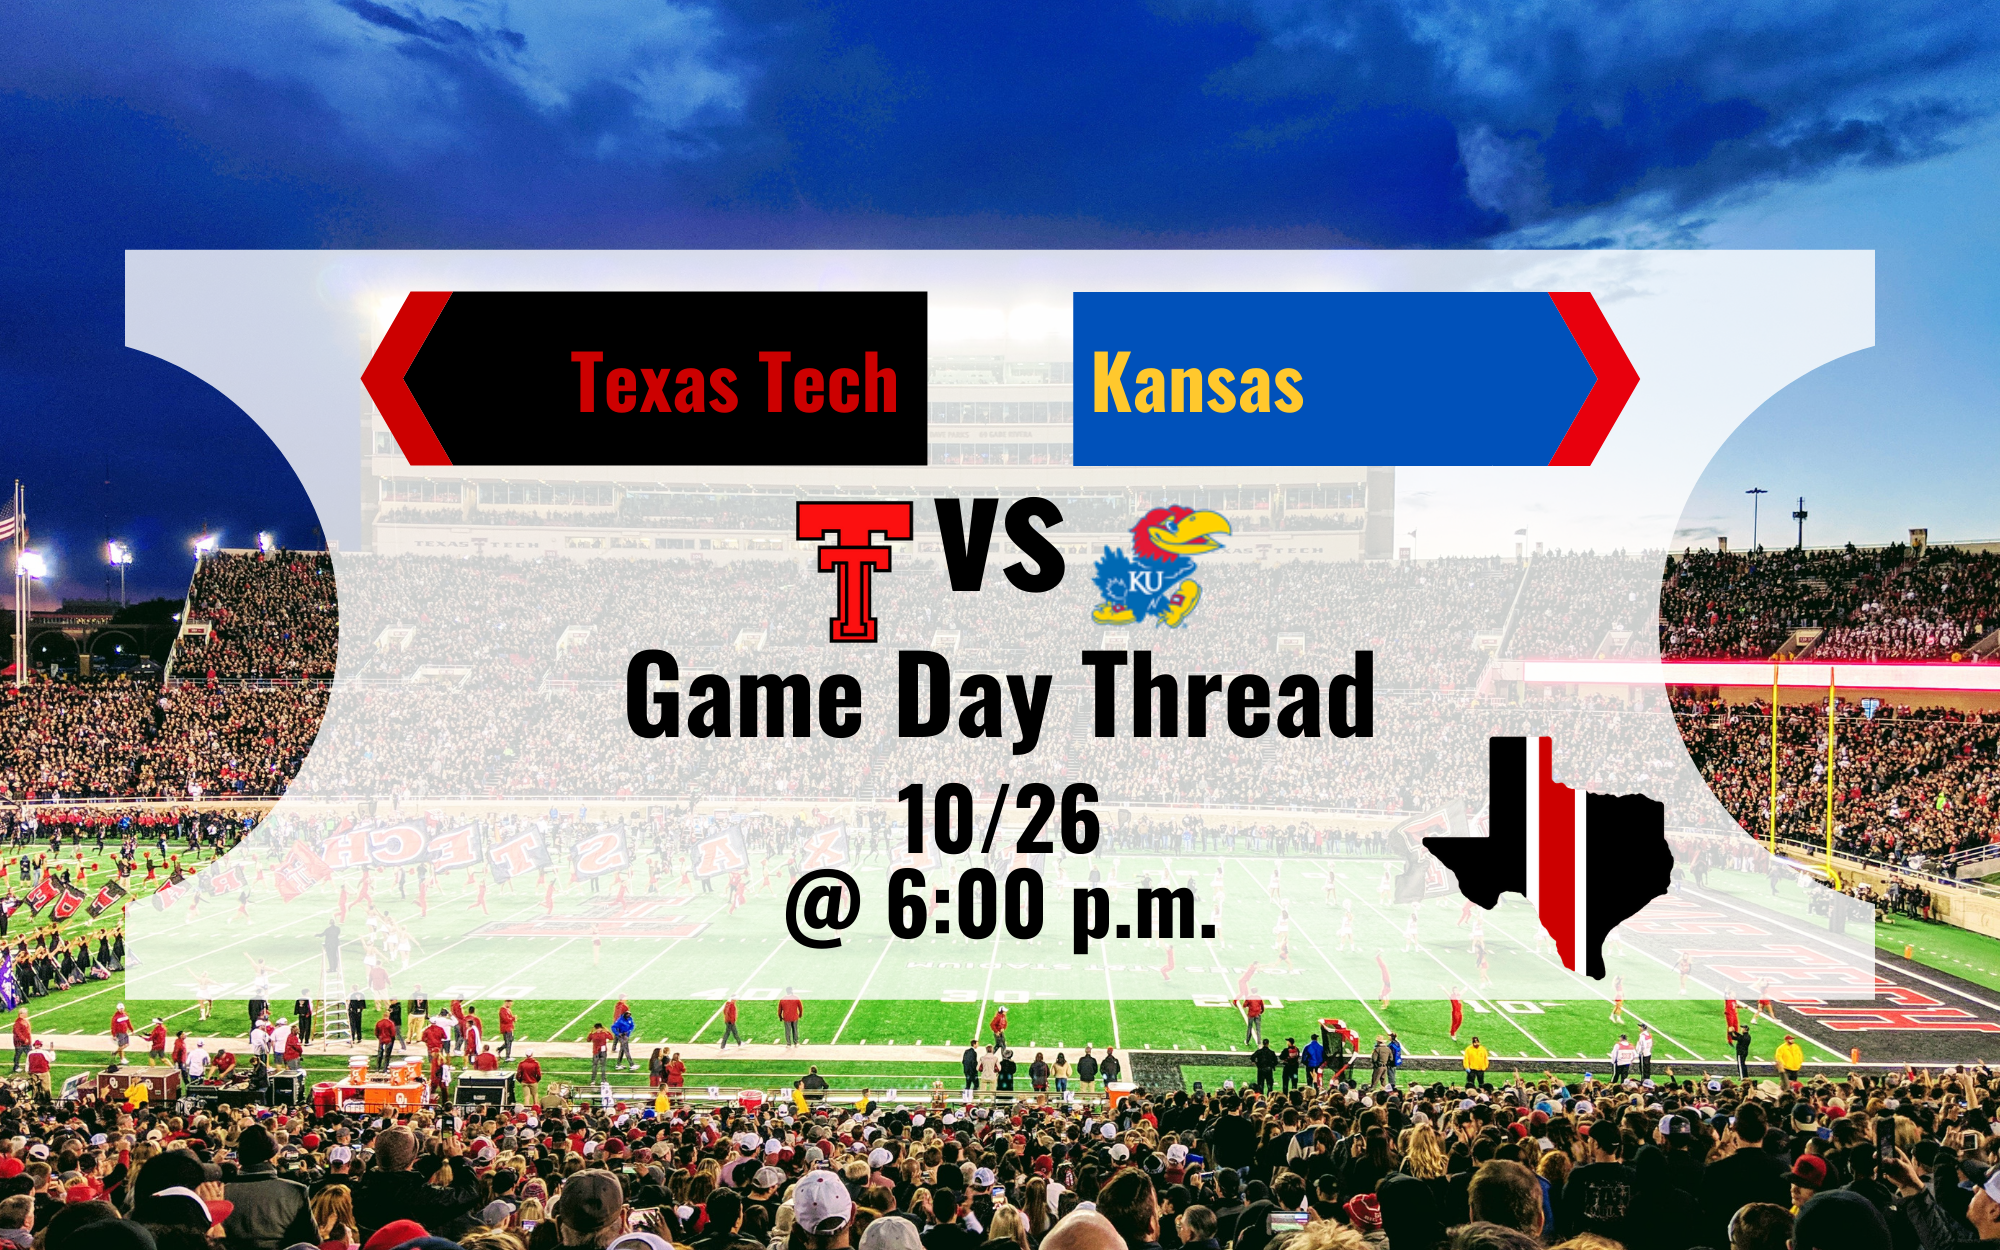 Game Day Thread 3: Texas Tech vs. Kansas